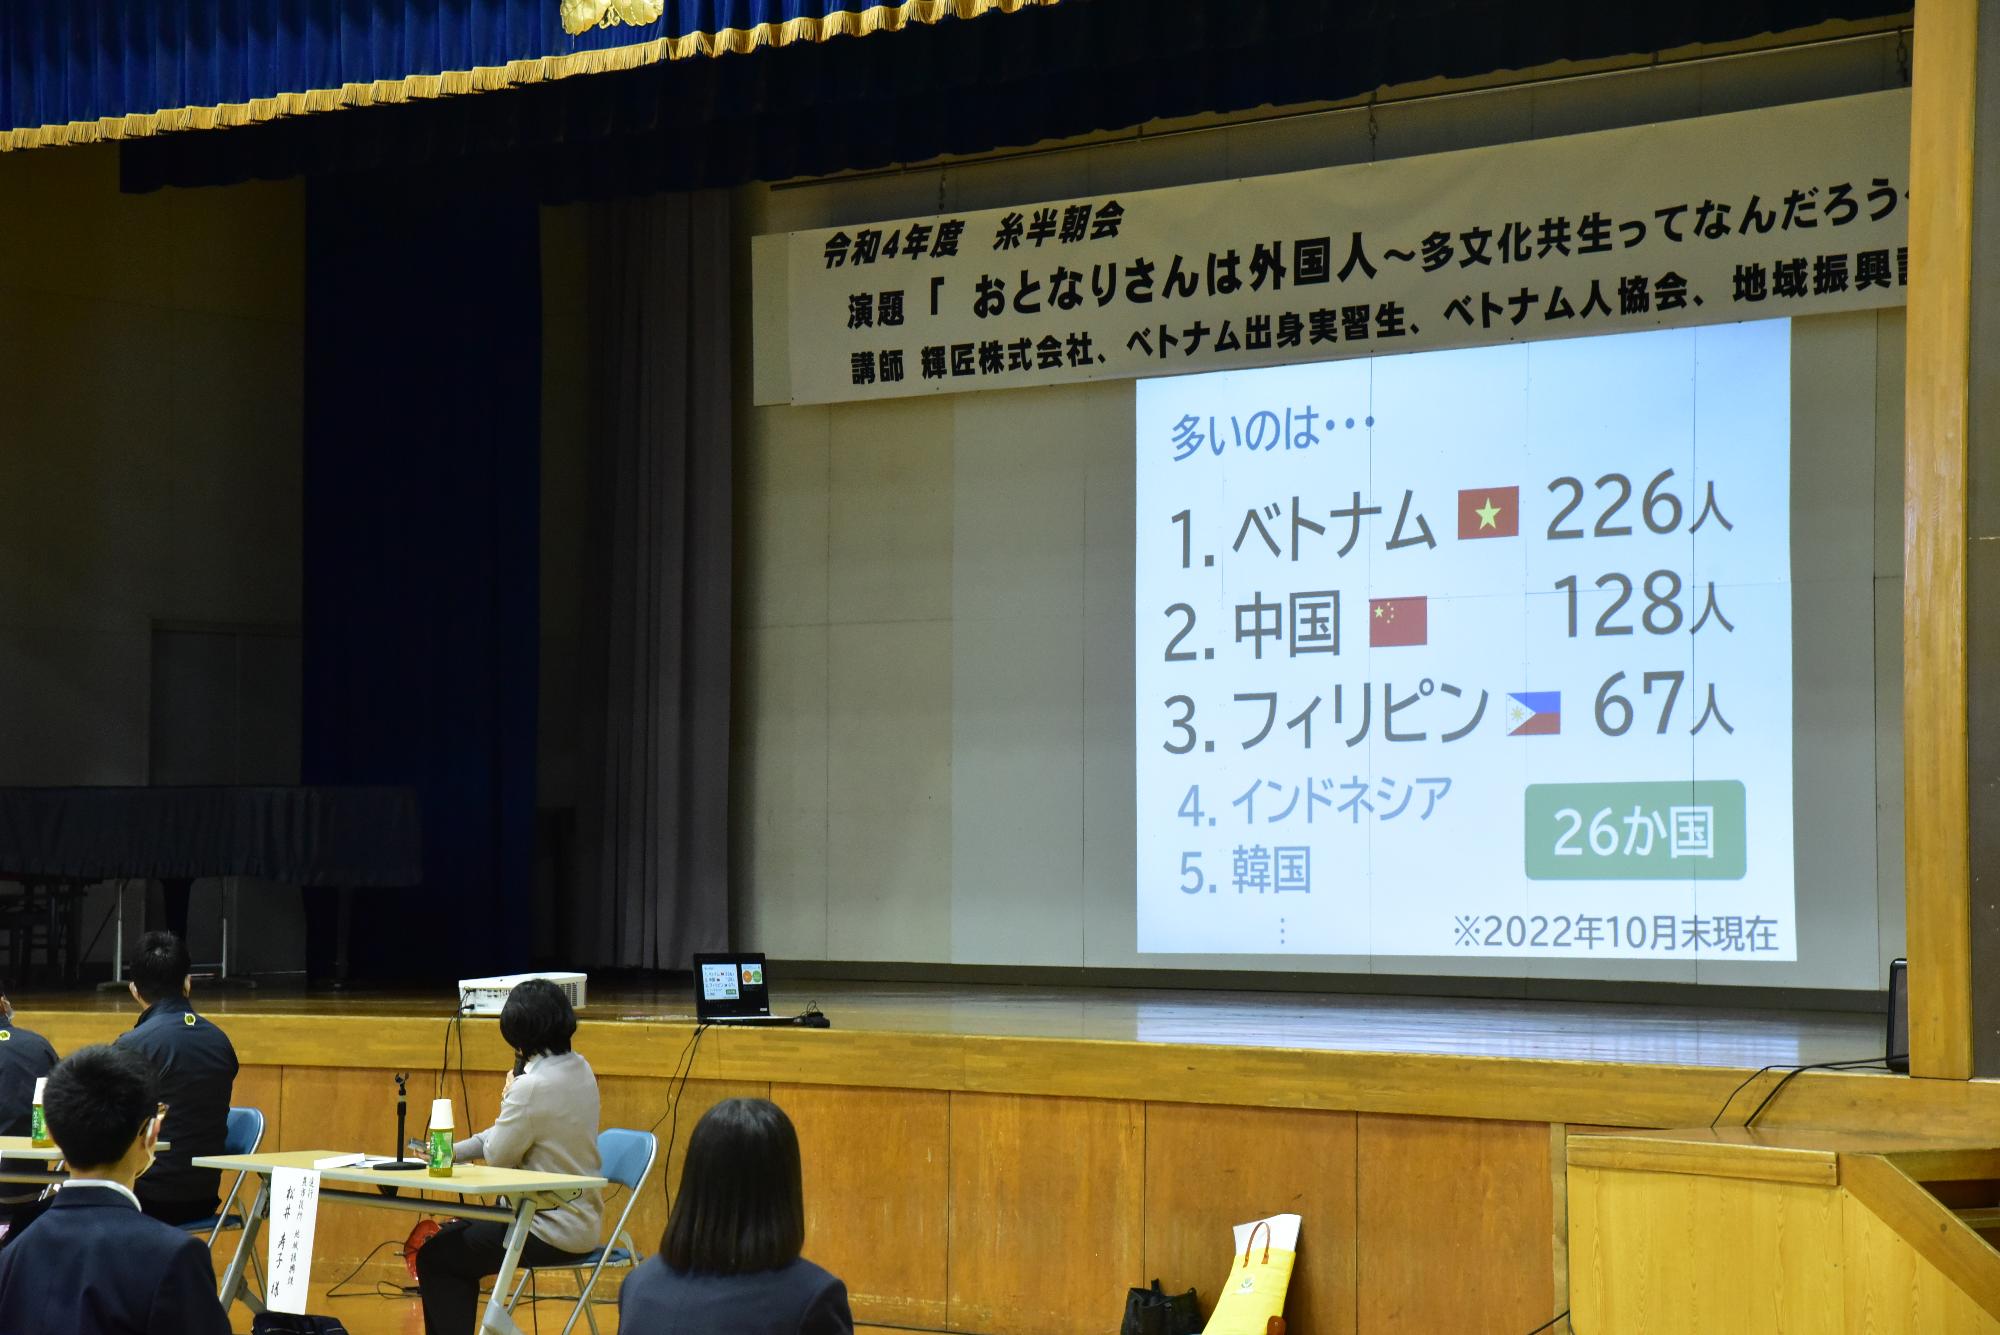 燕市内の外国人数を説明するスライドの写真。一番はベトナム人で226人。